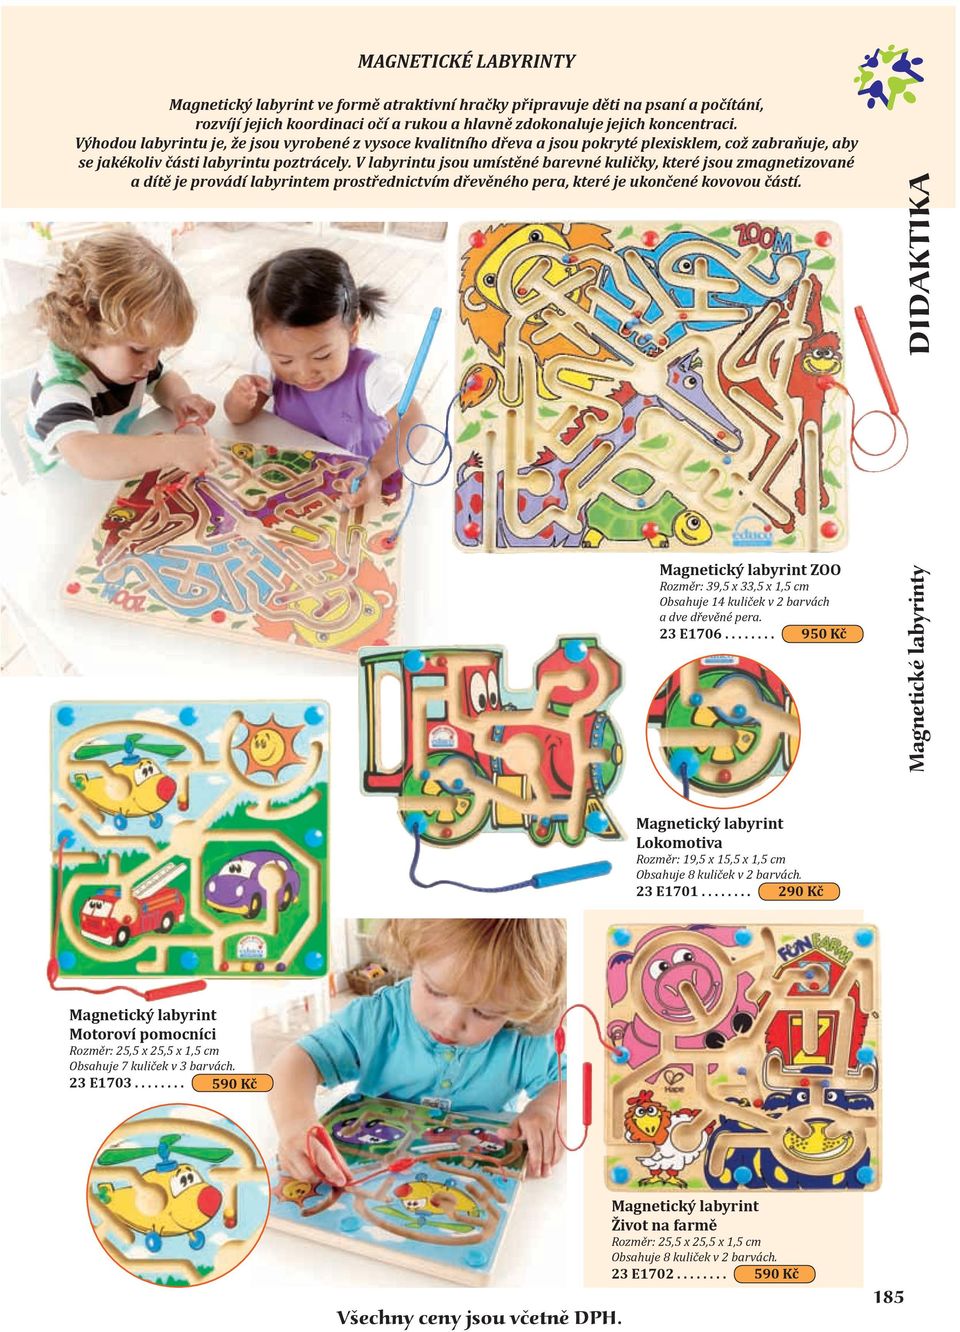 V labyrintu jsou umístěné barevné kuličky, které jsou zmagnetizované a dítě je provádí labyrintem prostřednictvím dřevěného pera, které je ukončené kovovou částí.